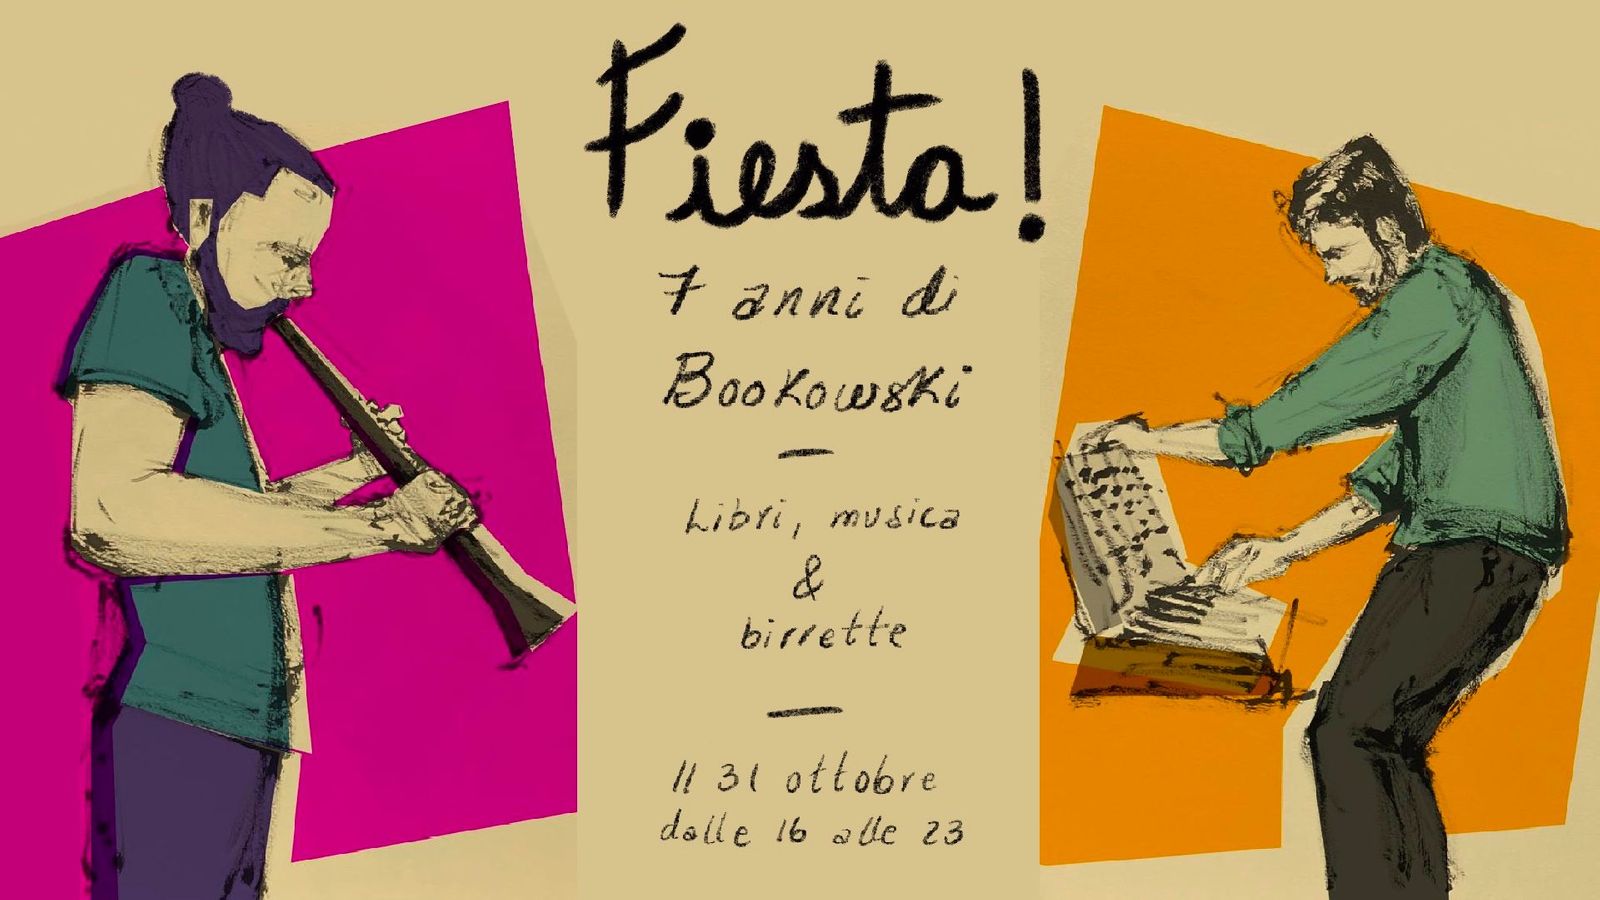 Fiesta! 7 anni di Bookowski